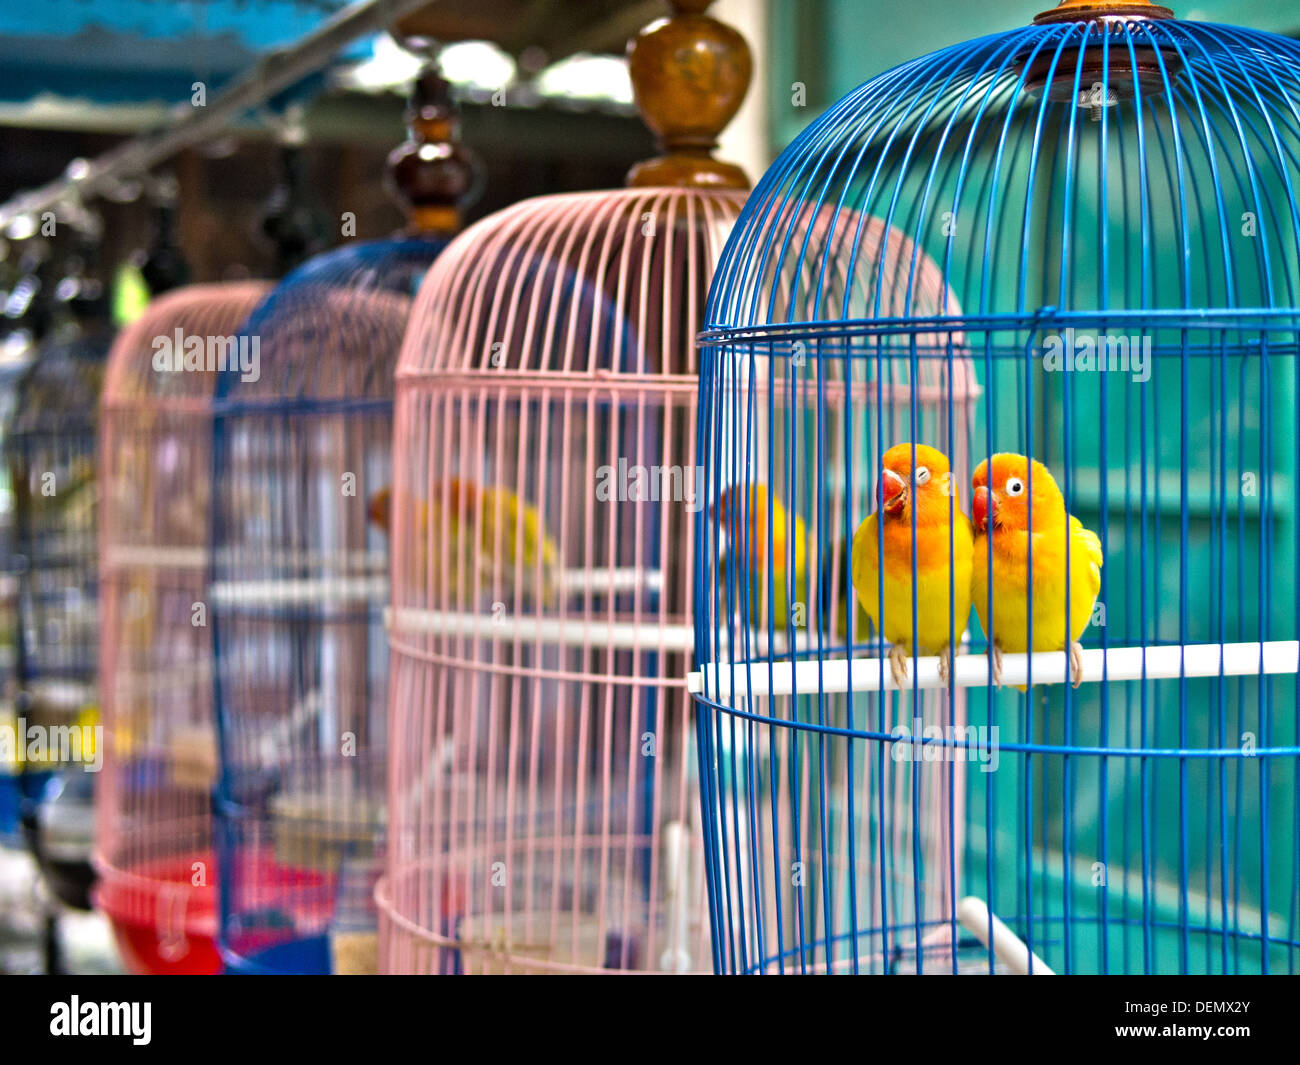 Animali in gabbia immagini e fotografie stock ad alta risoluzione - Alamy